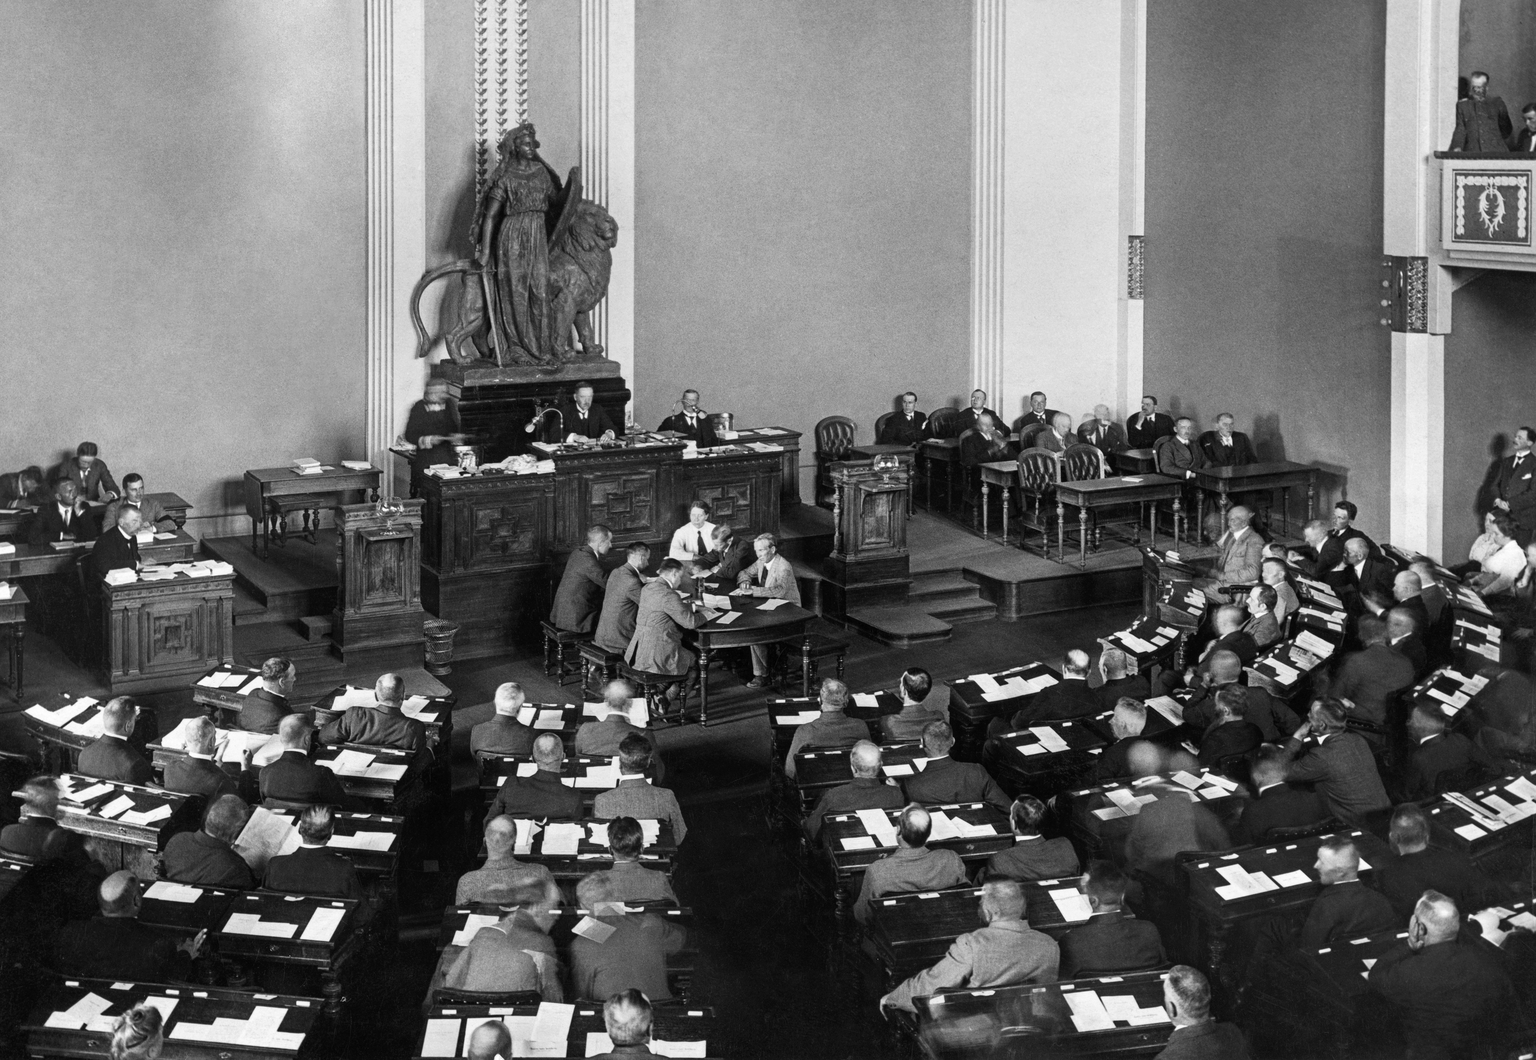 Soome eduskunna istung. Pilt on tehtud 1919. aastal.